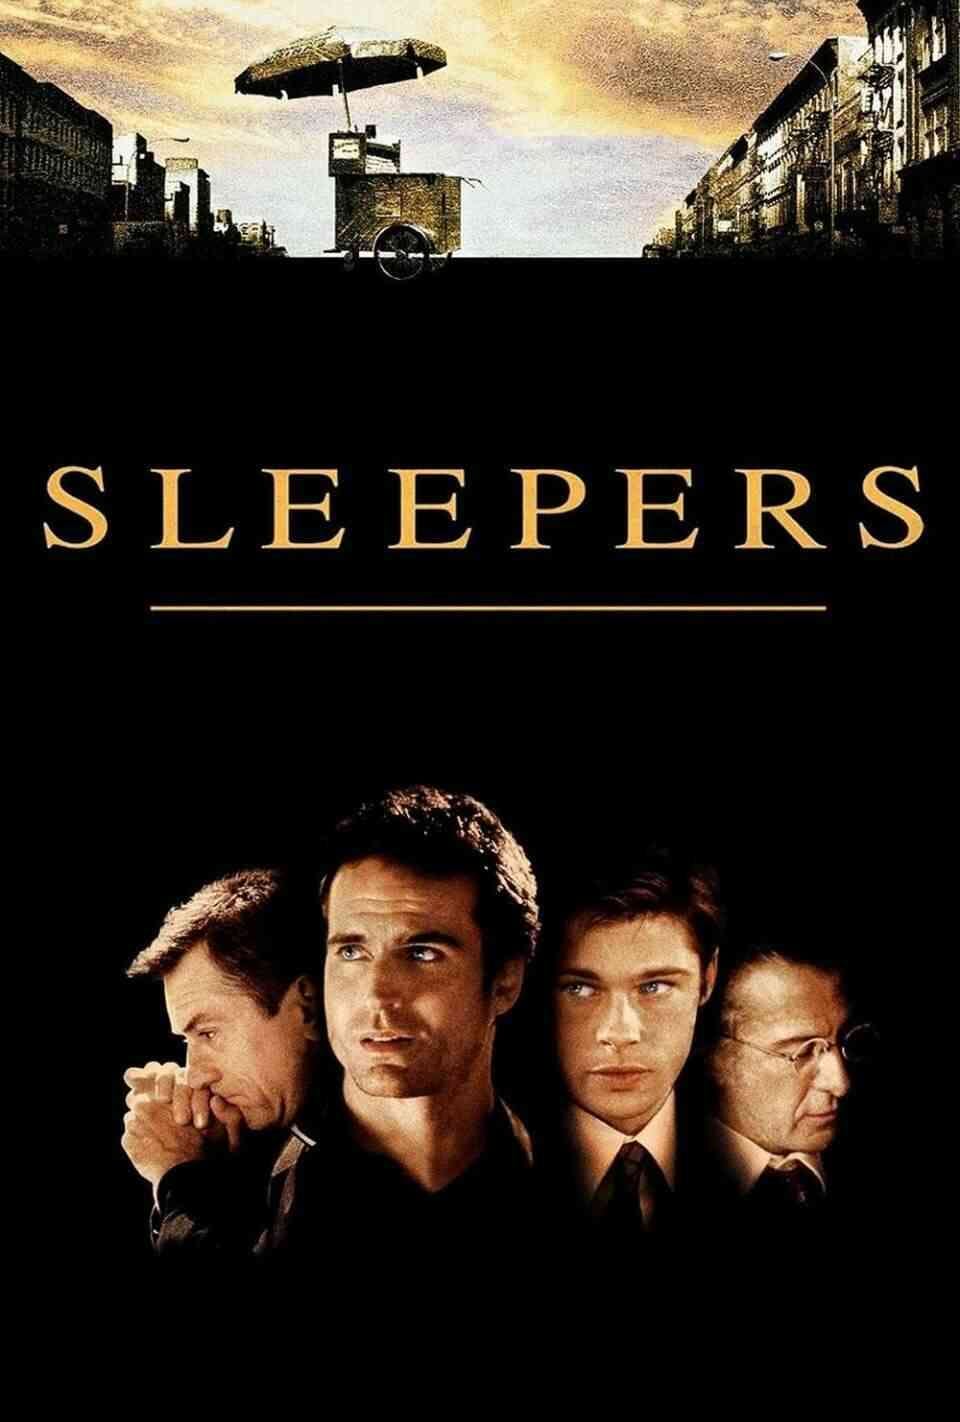 Read Sleepers screenplay.